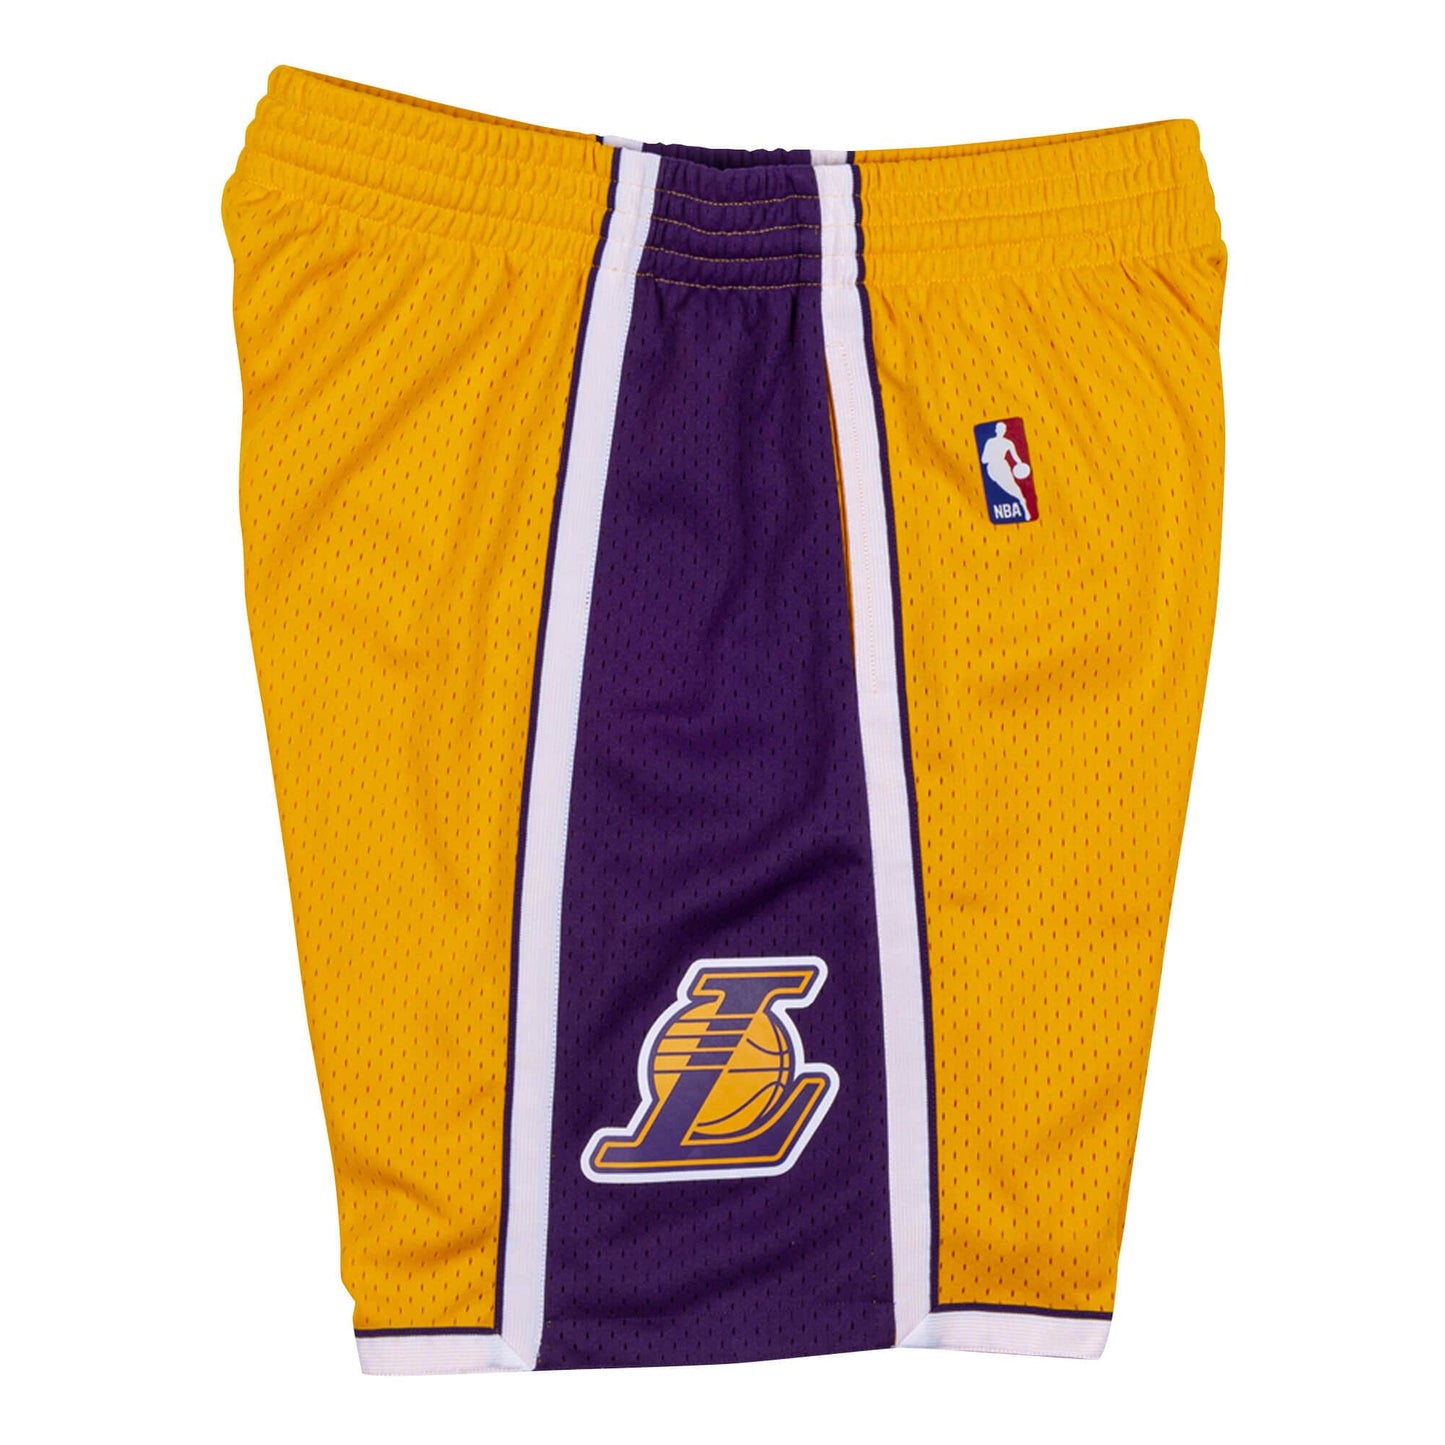 NBA Swingman Shorts Los Angeles Lakers 2009-10